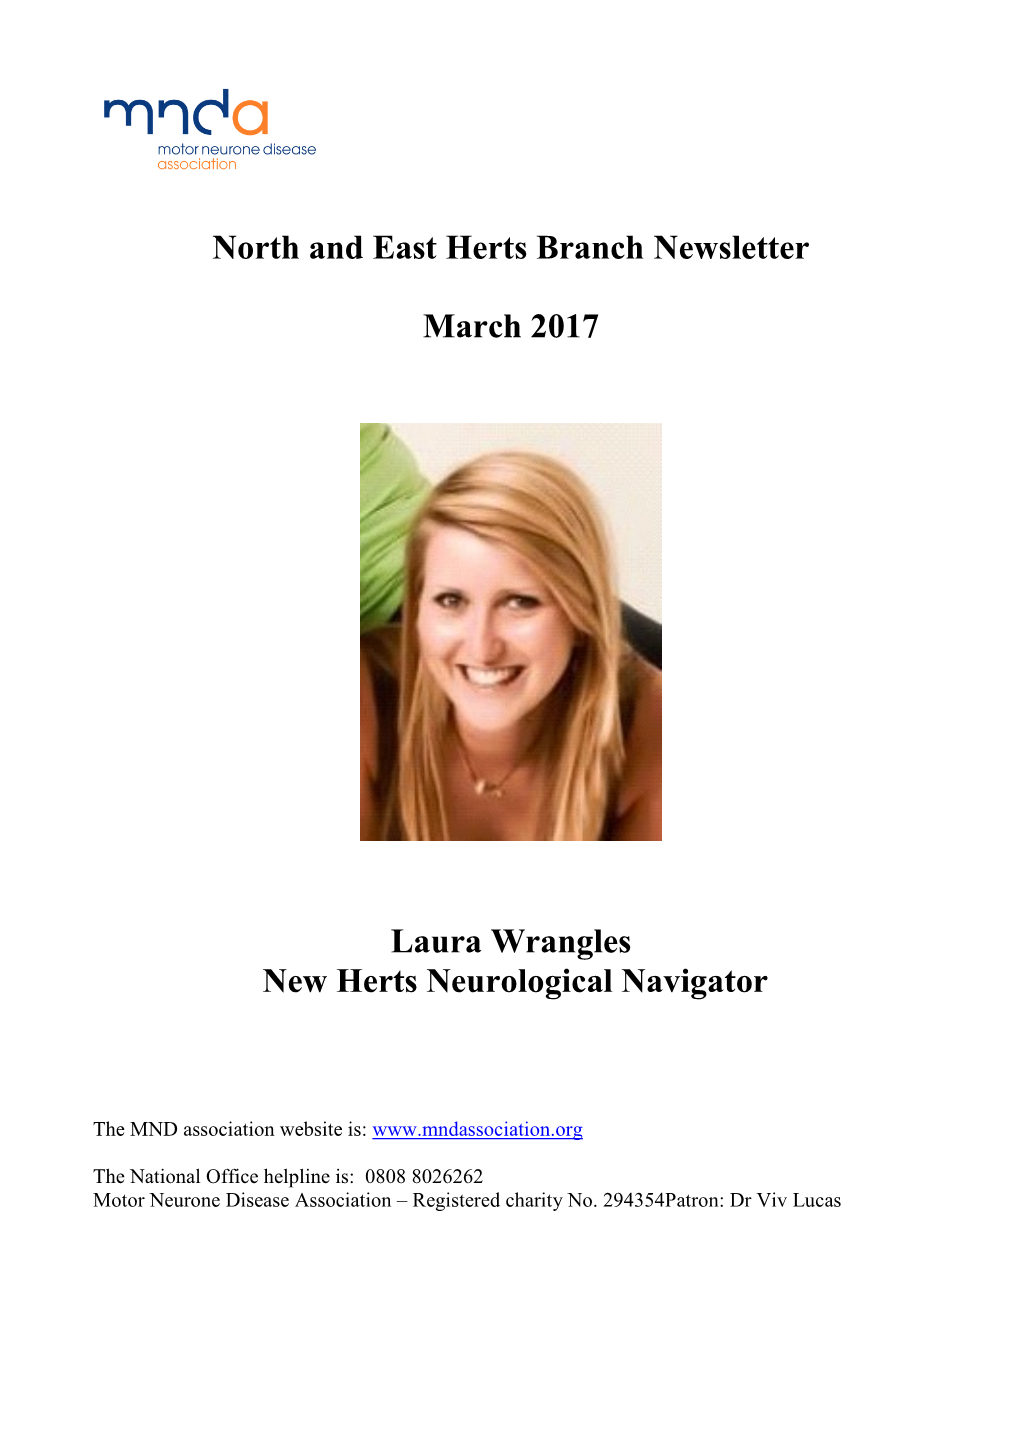 New Herts Neurological Navigator